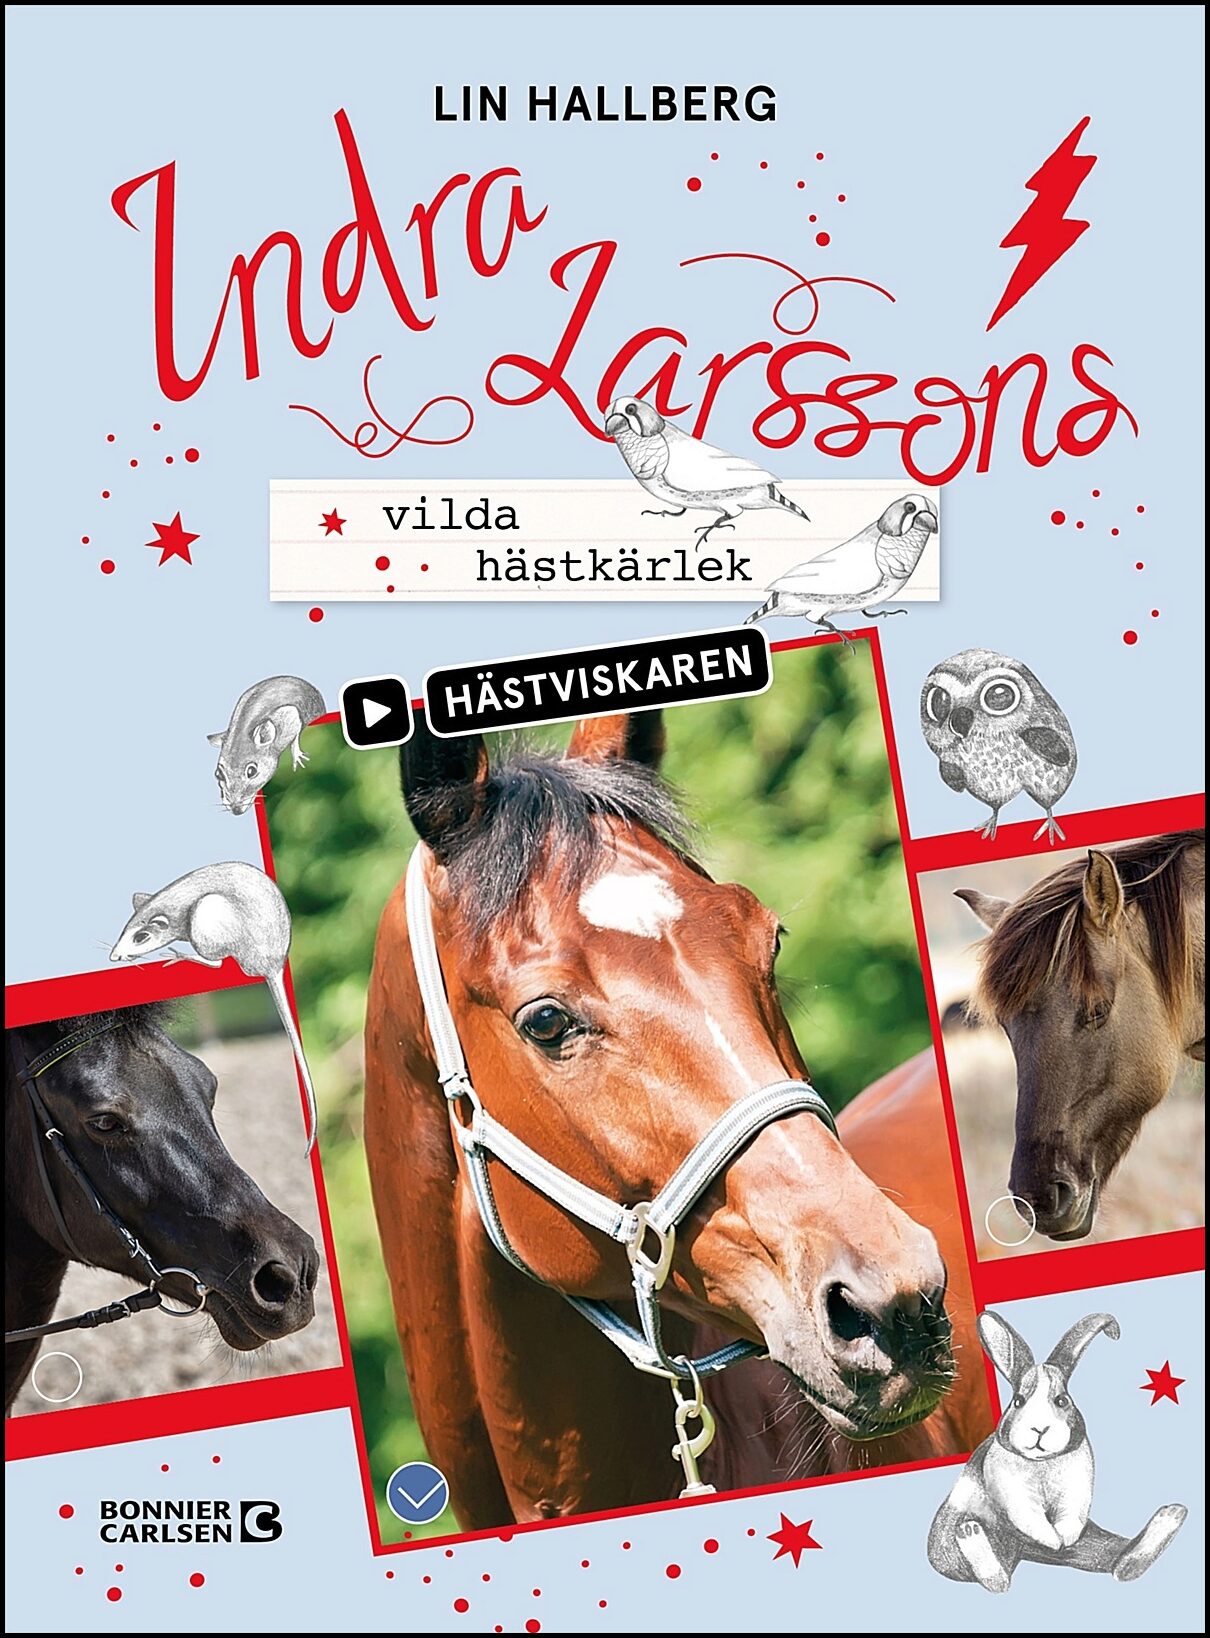 Hallberg, Lin | Indra Larssons vilda hästkärlek